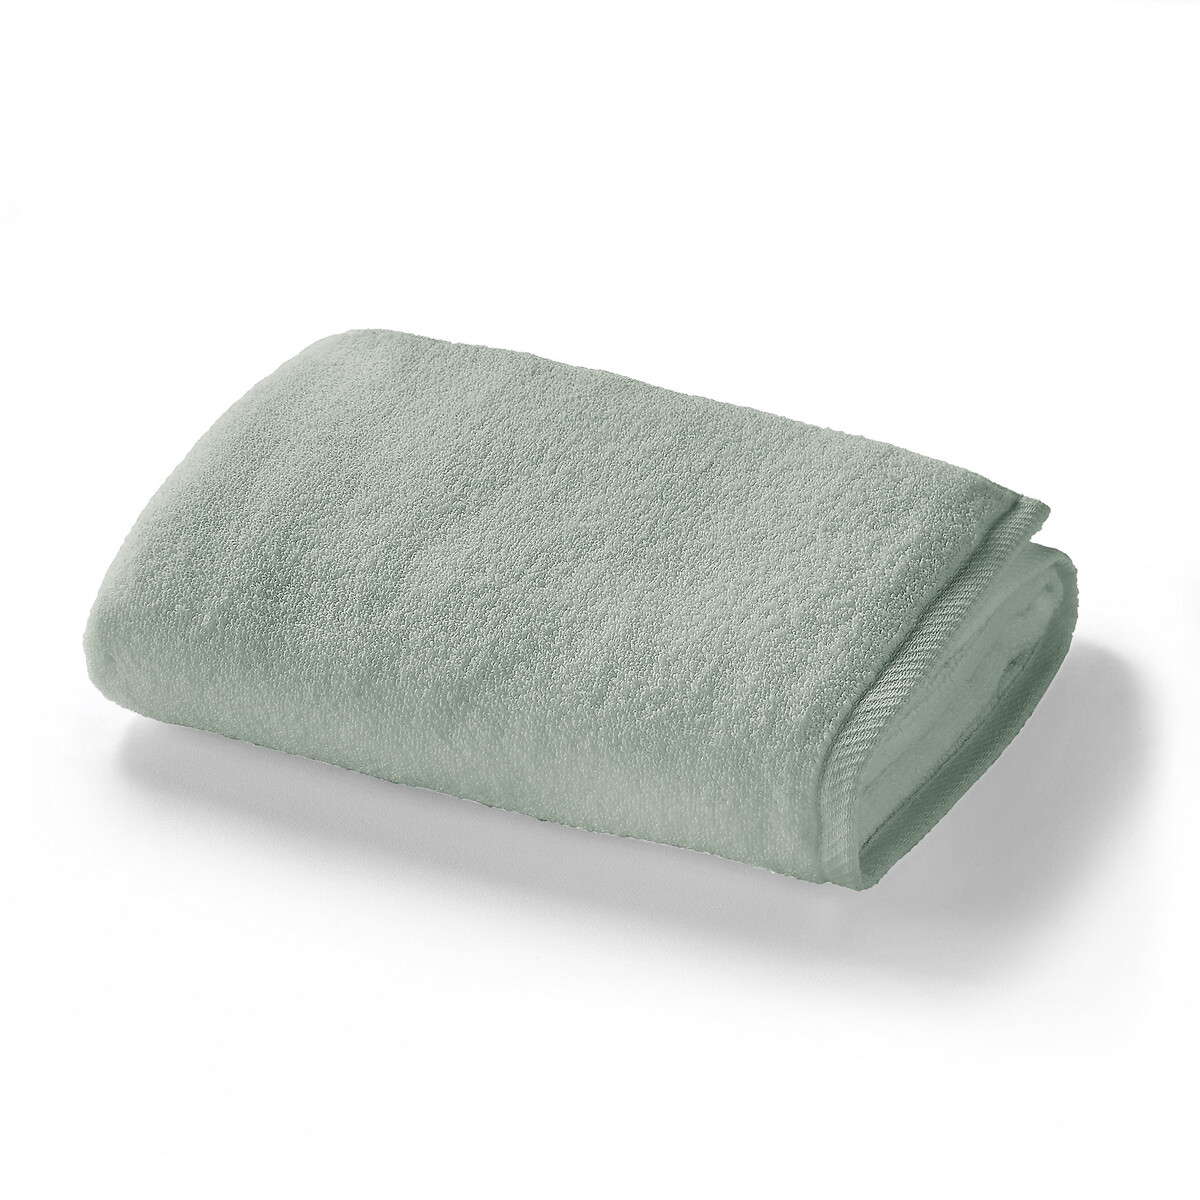 Махровое полотенце банное 100 хлопок Zro Twist 70 x 140 см зеленый полотенце банное махровое в полоску malo 70 x 140 см желтый